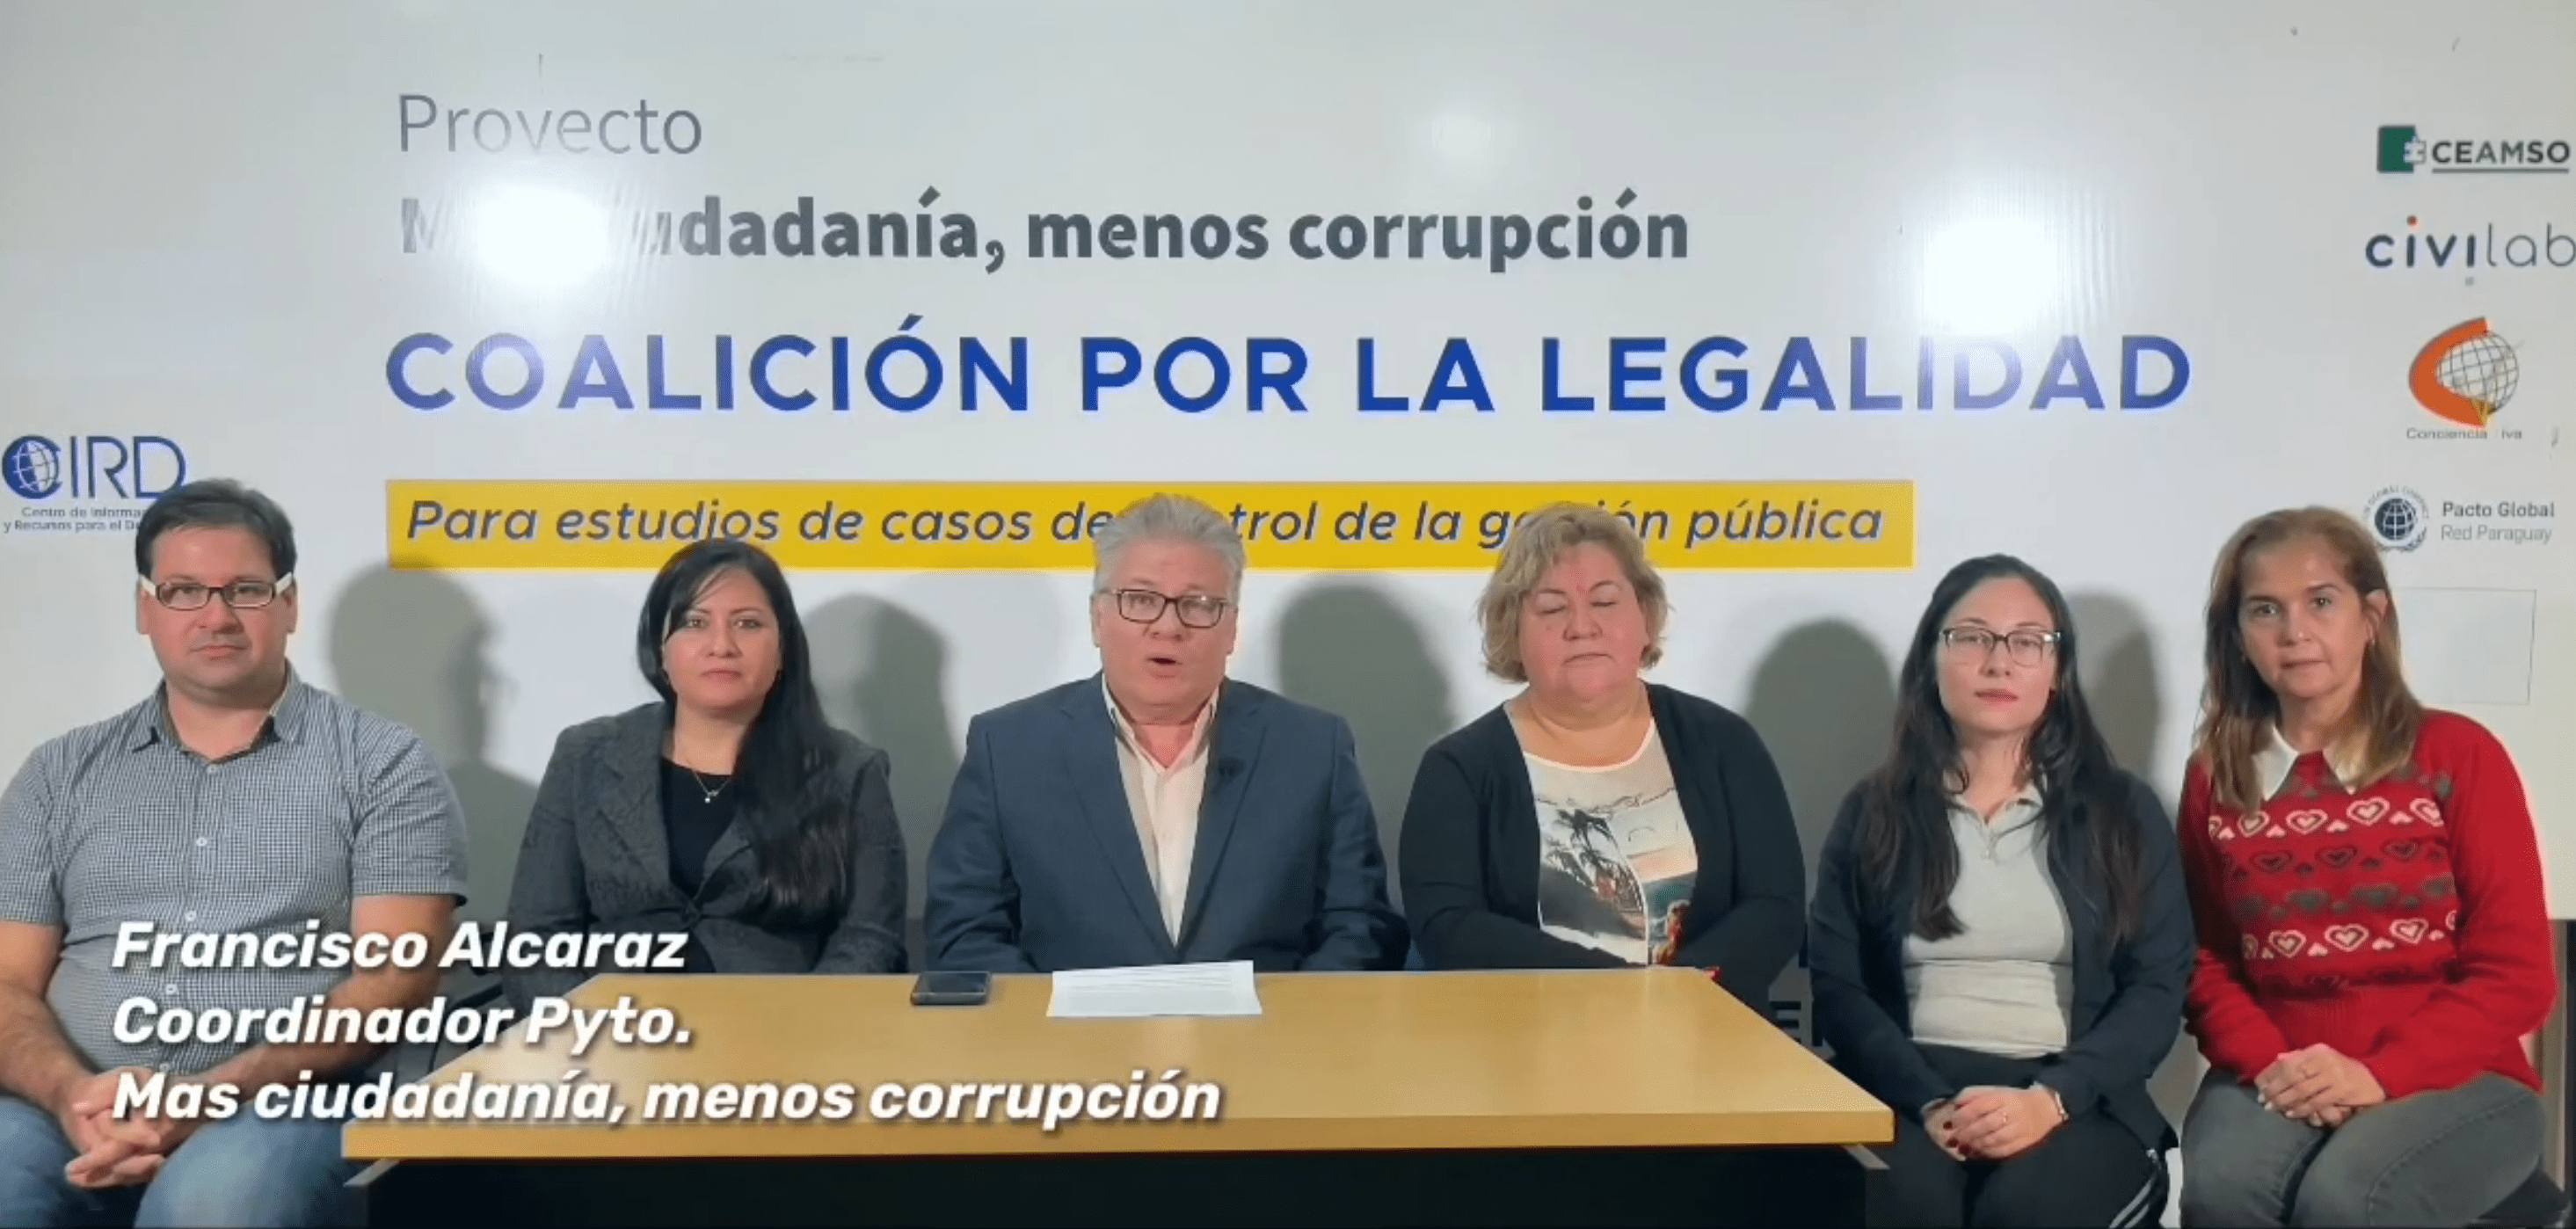 La Coalición por la Legalidad solicitó y logró VETO a ley que modifica un artículo que podría beneficiar a corruptos